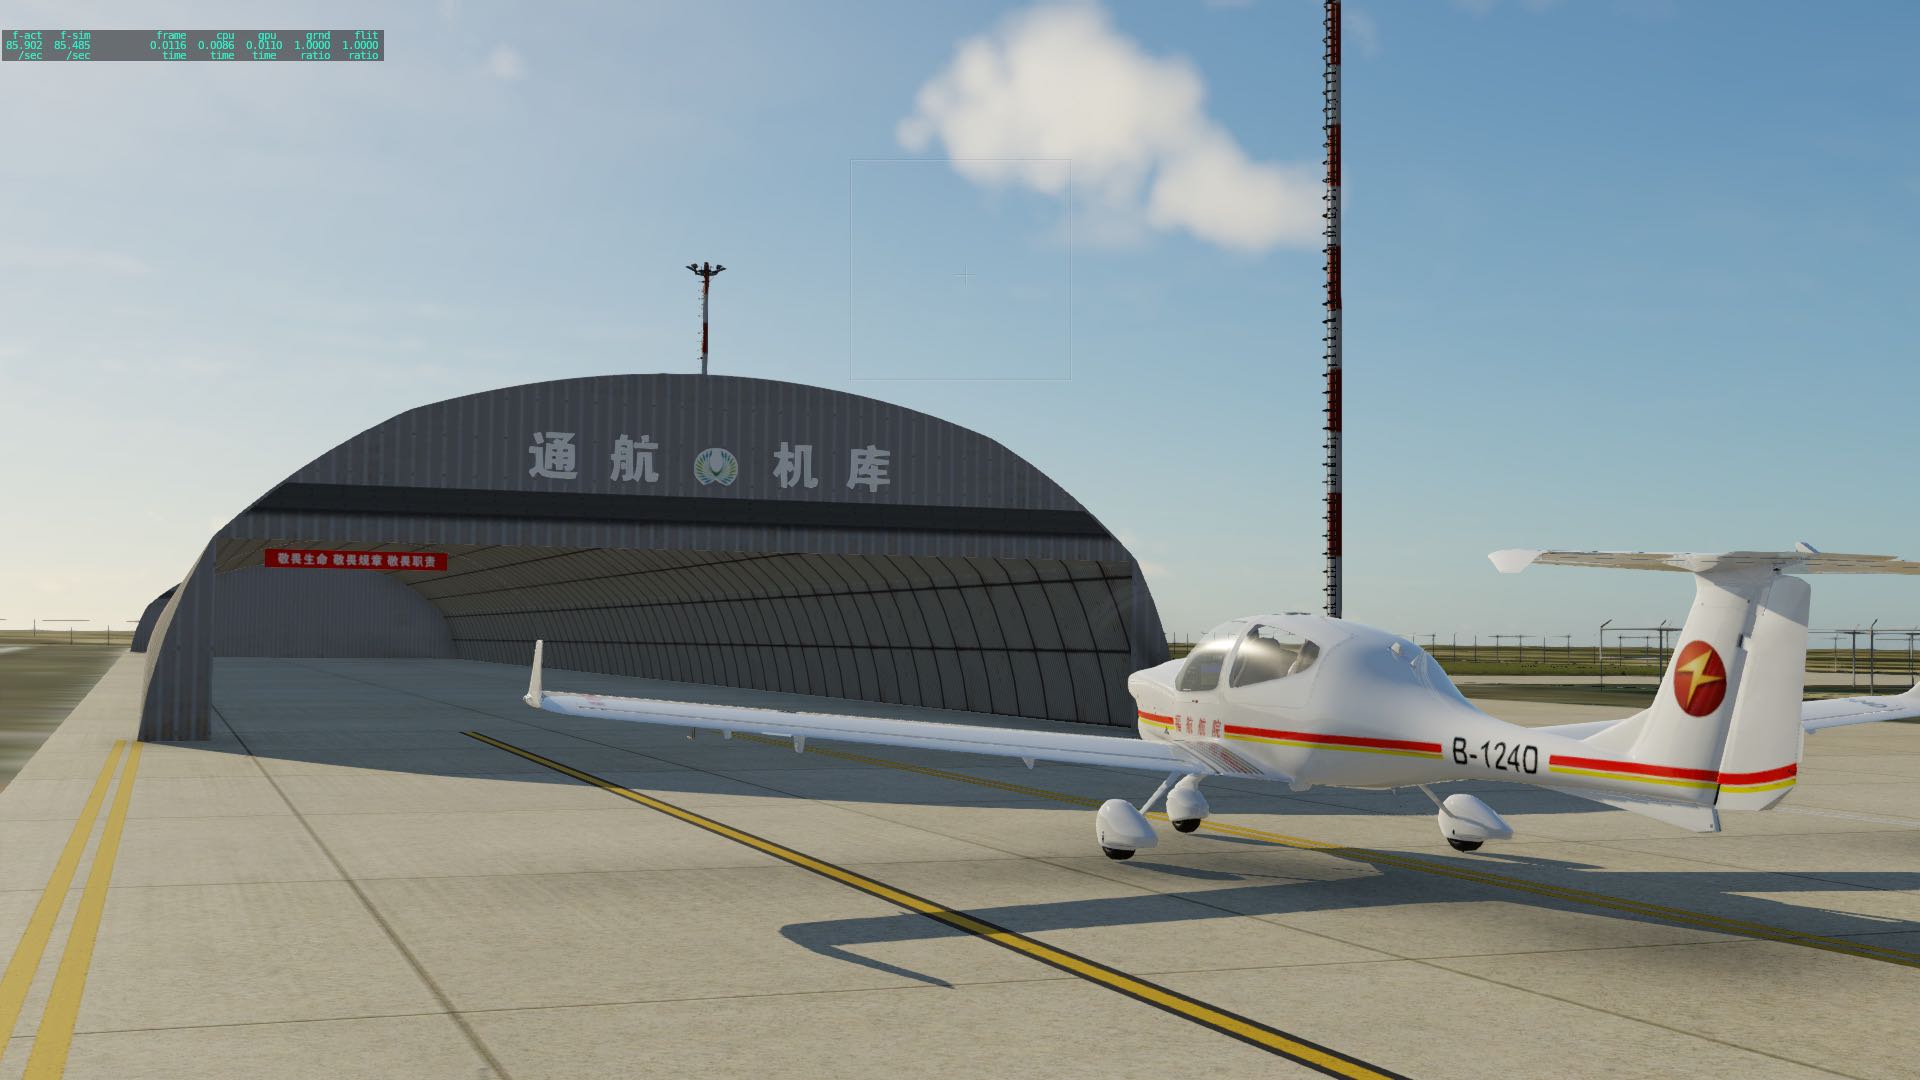 【预告】X-Plane 12松原查干湖机场 ZYSQ-2626 